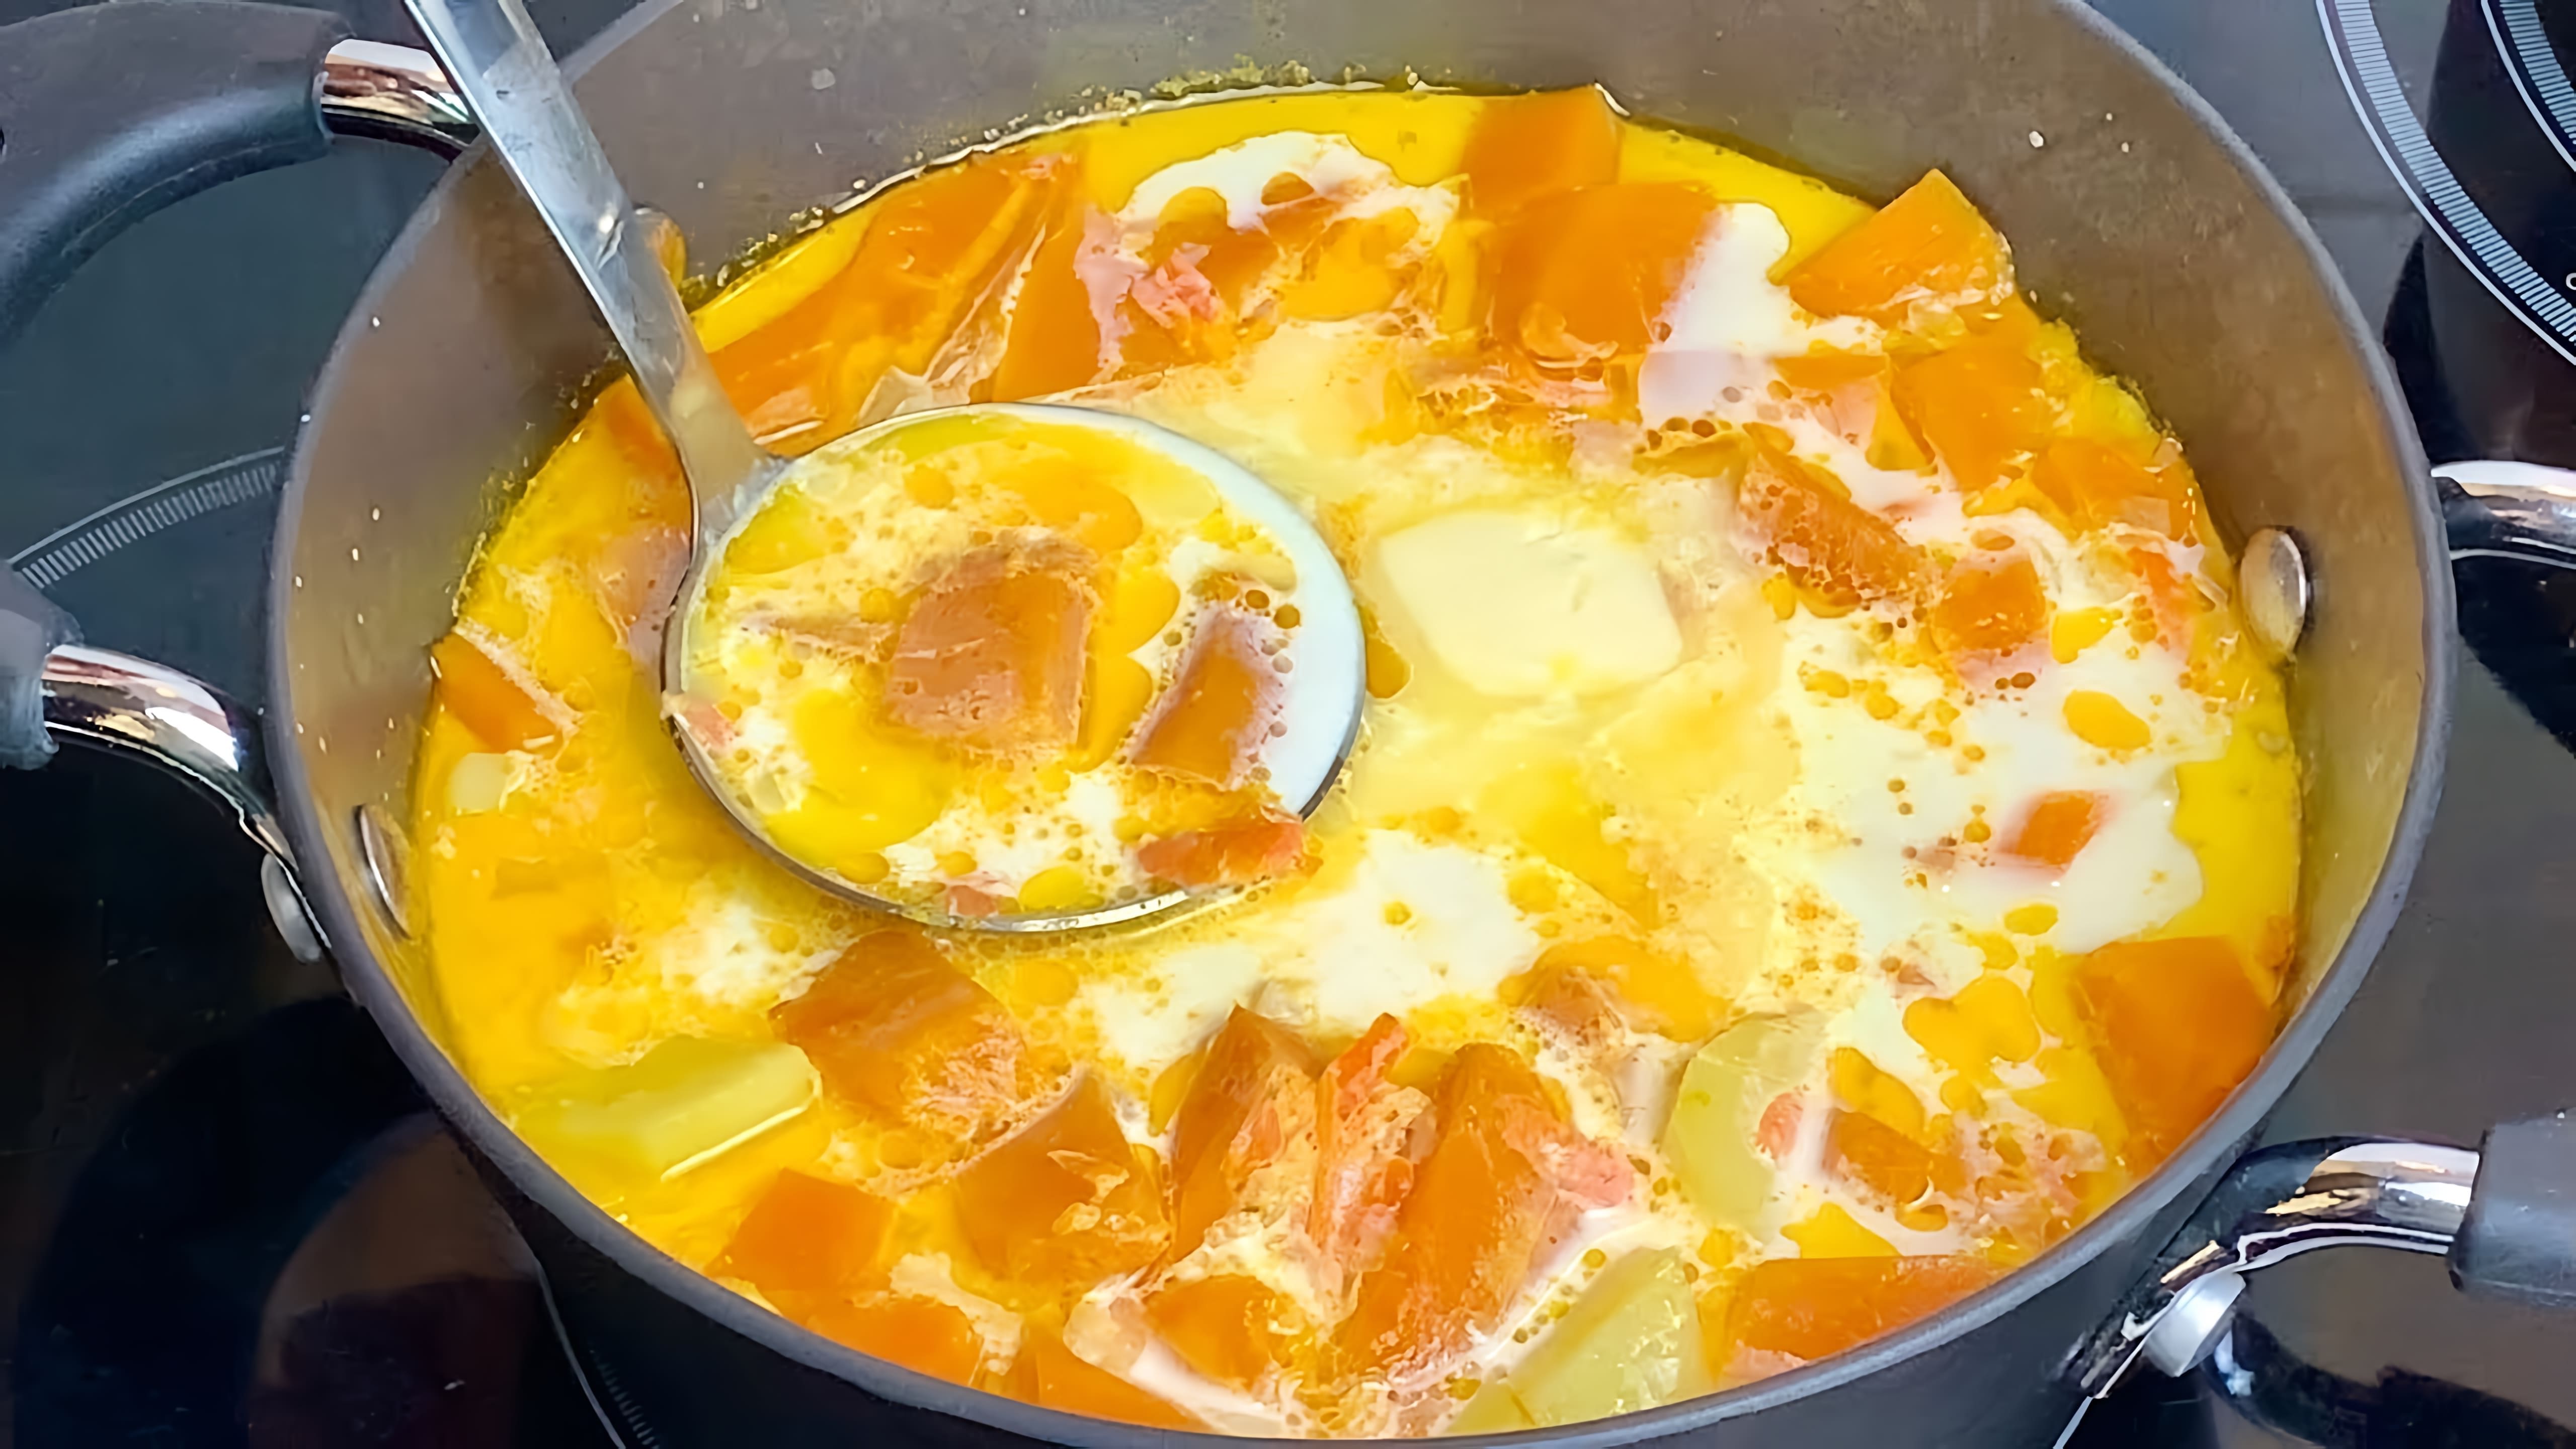 В этом видео демонстрируется рецепт приготовления бархатного супа из тыквы